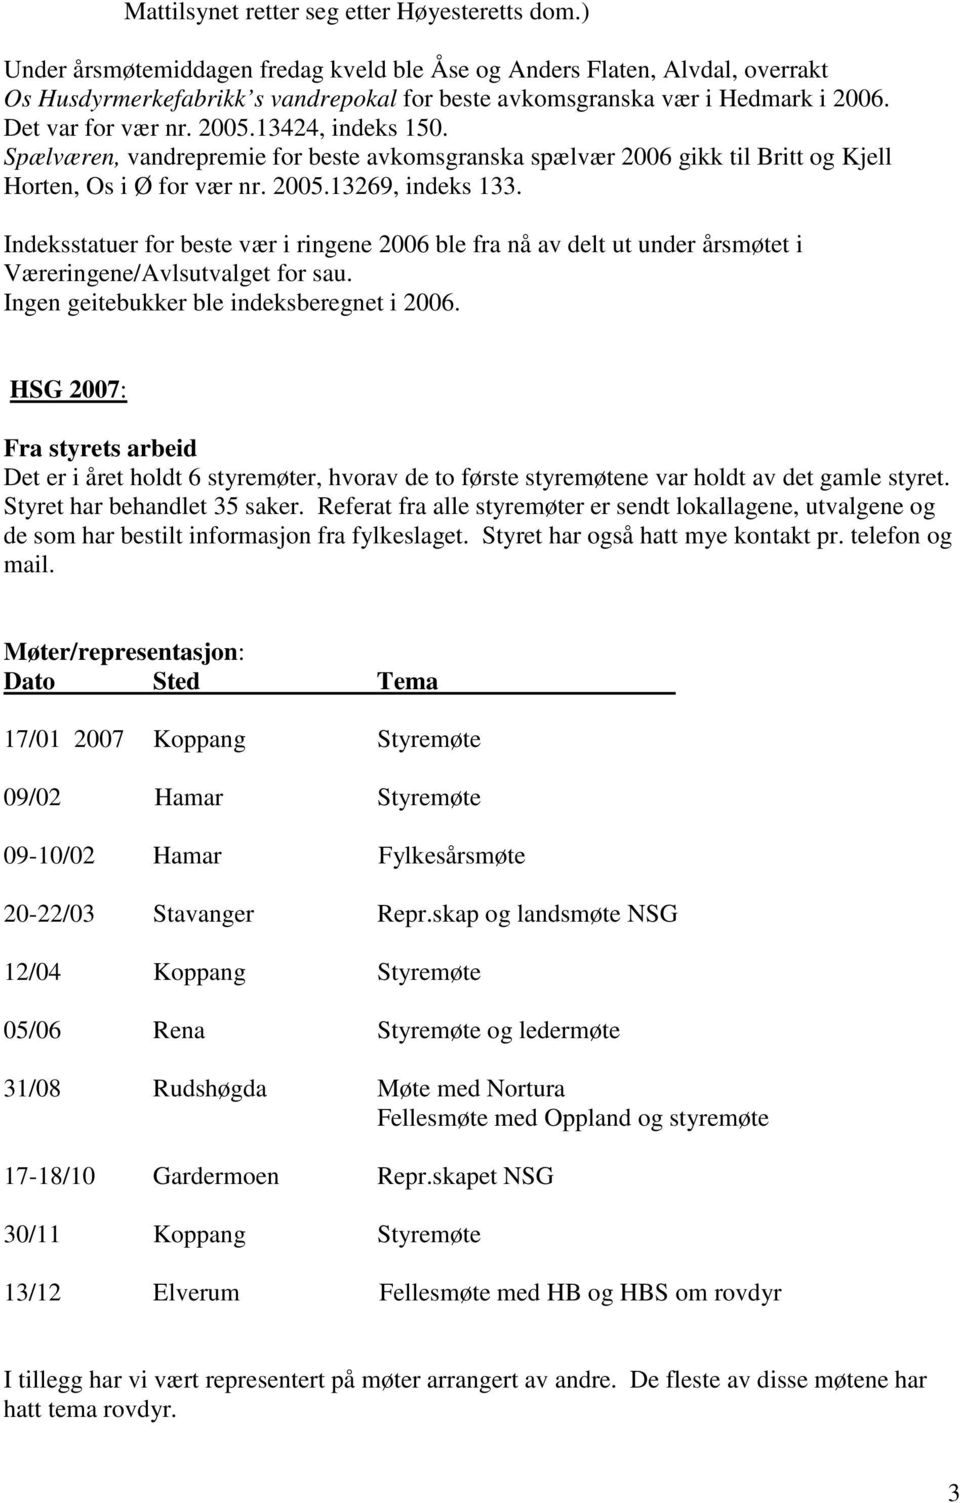 13424, indeks 150. Spælværen, vandrepremie for beste avkomsgranska spælvær 2006 gikk til Britt og Kjell Horten, Os i Ø for vær nr. 2005.13269, indeks 133.